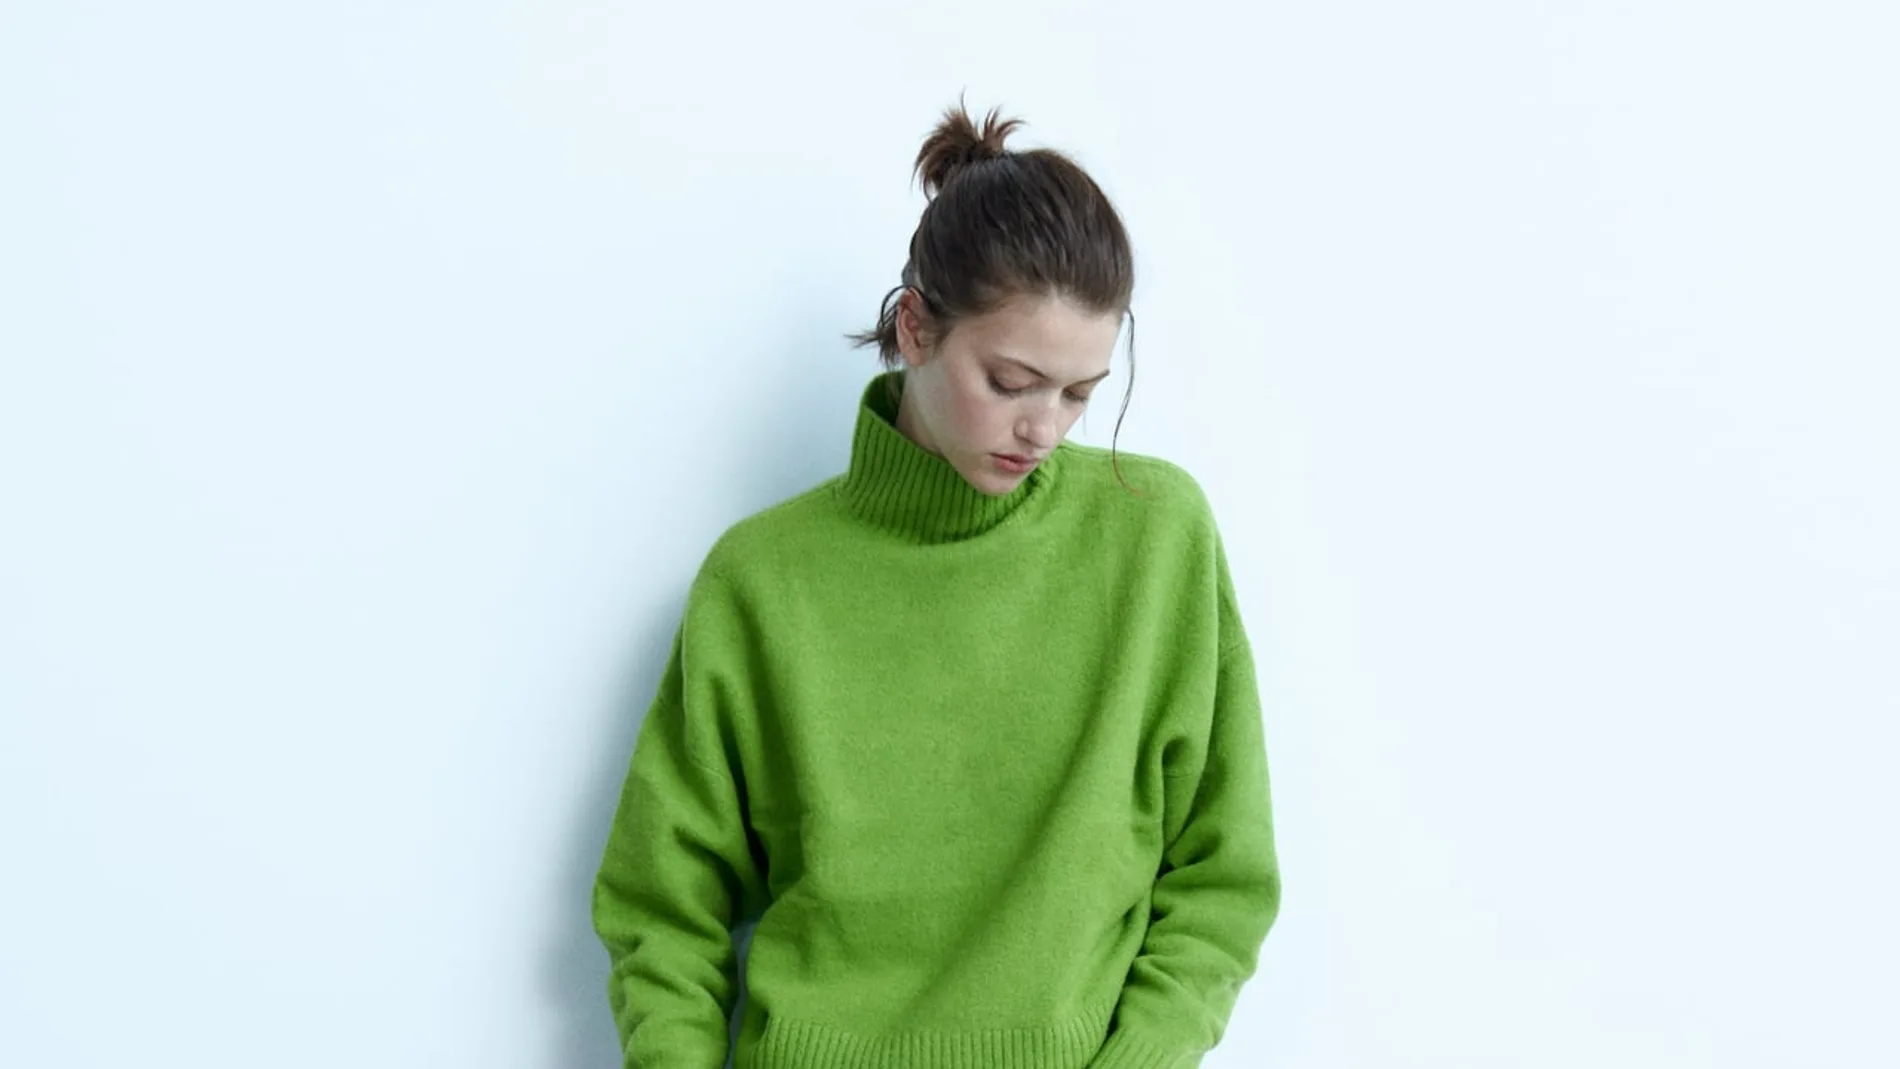 Los jerséis de lana son la opción perfecta para el otoño e invierno